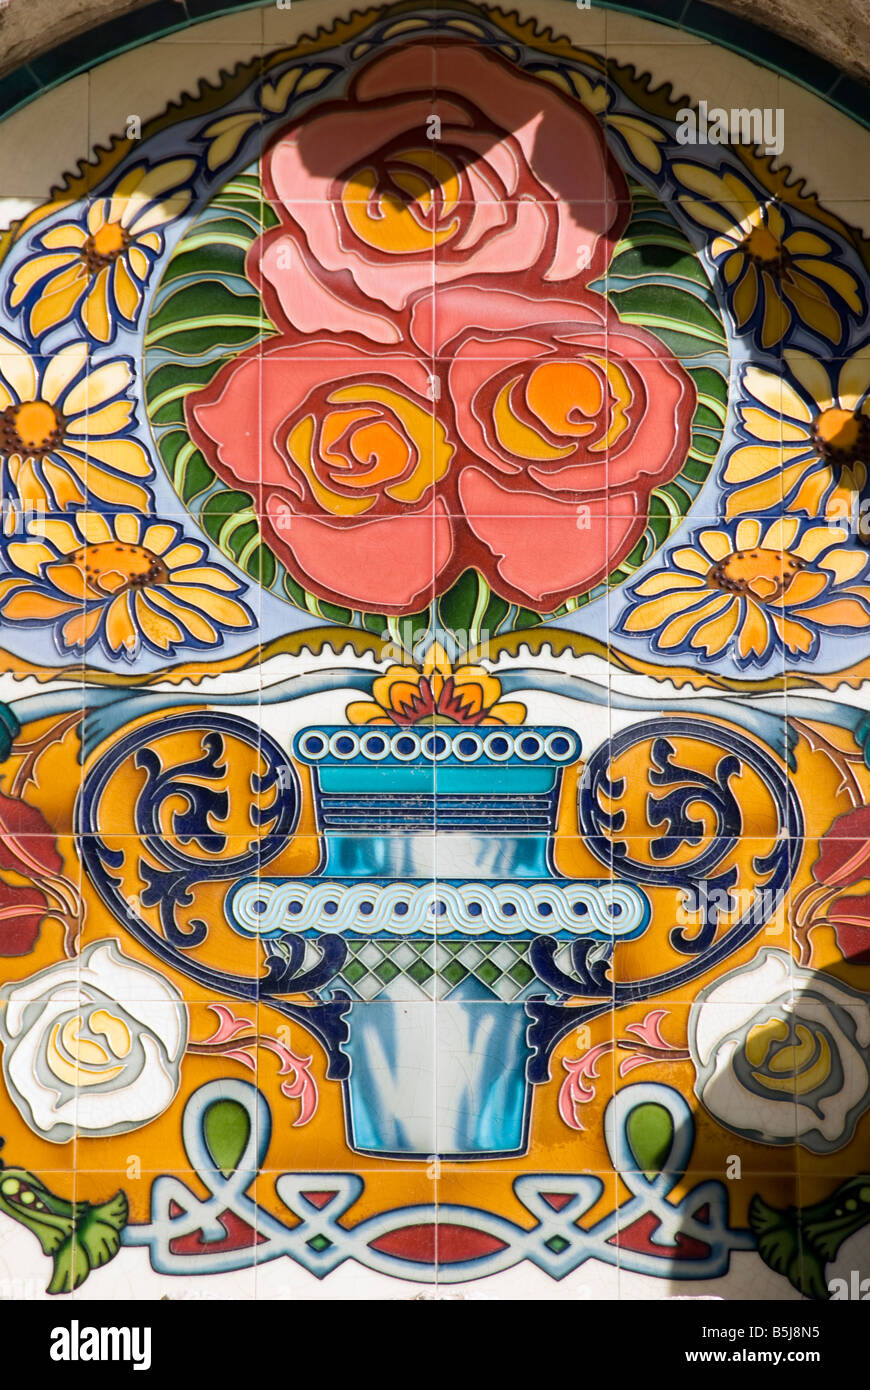 Détail de l'azulejo émaillés carreaux dans l'ancien marché couvert Mercado de Colón, dans la ville de Valence Espagne Banque D'Images